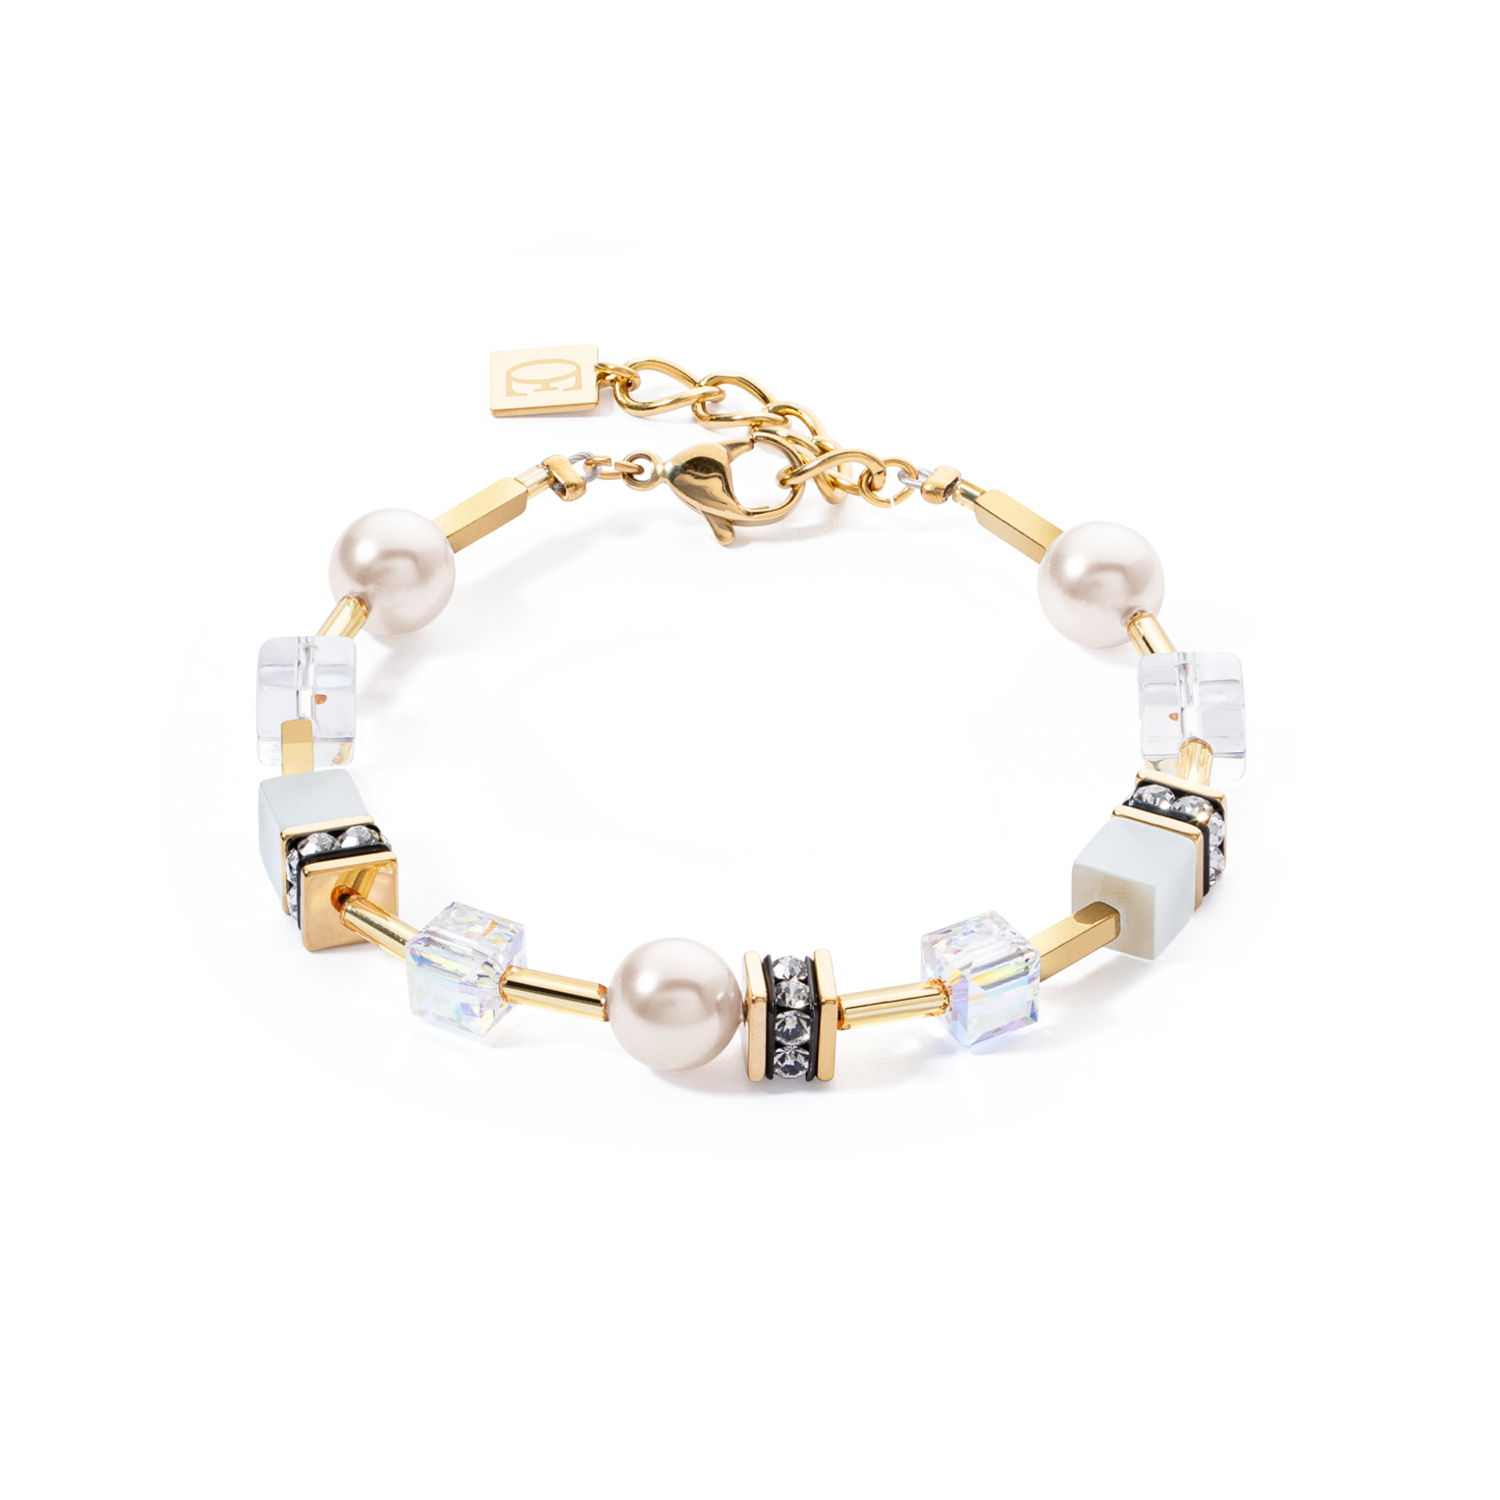 Kollektion 4081 – Weißgold – Armband – Löwenherz 